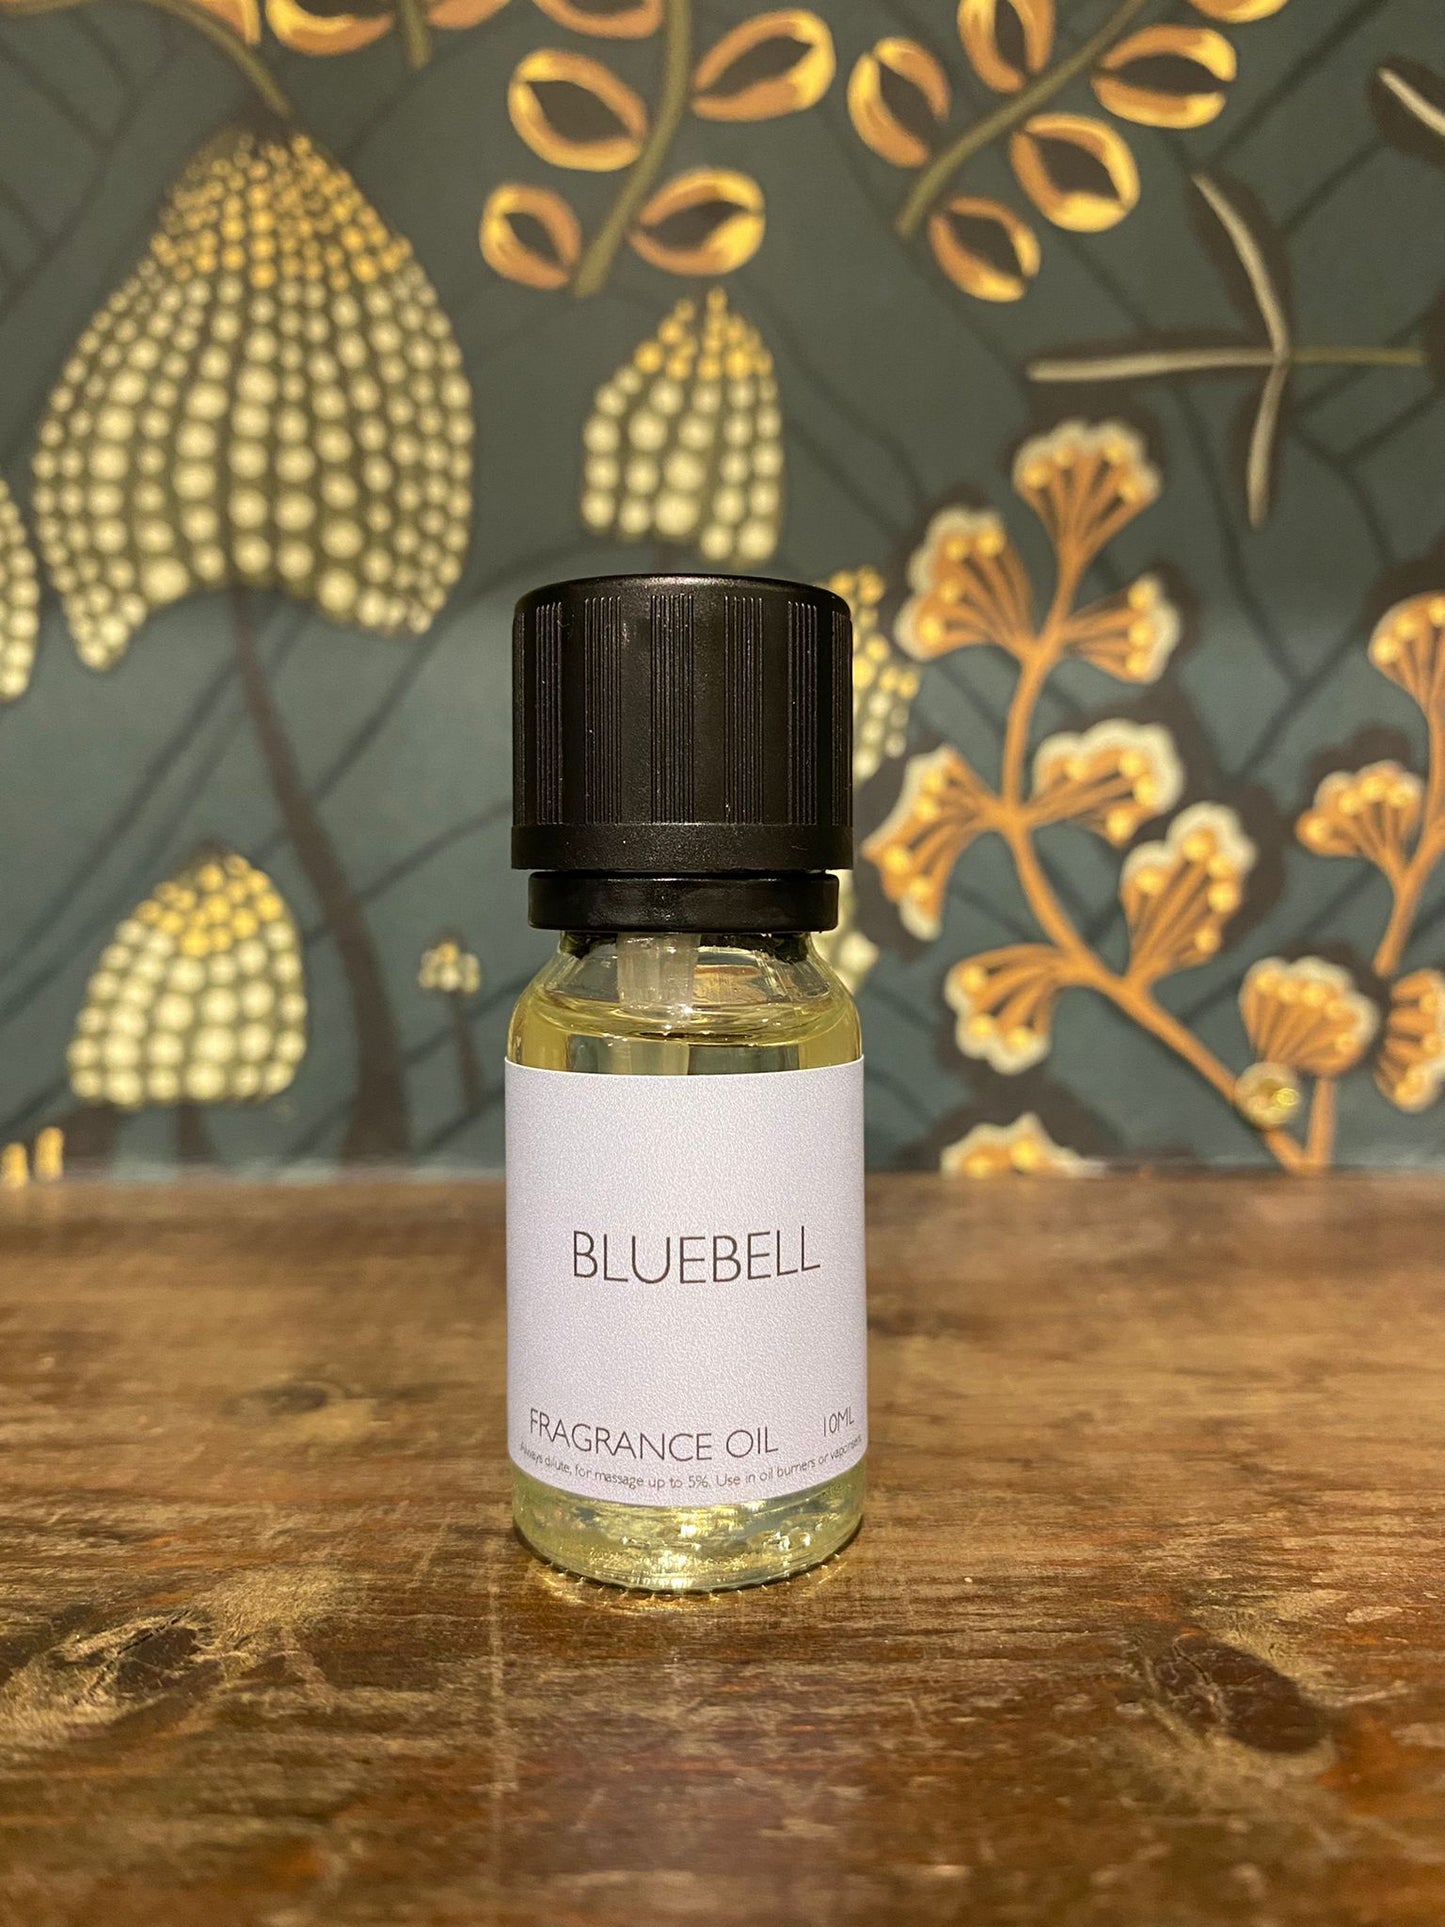 Bluebell Fragrance Oil 10ml